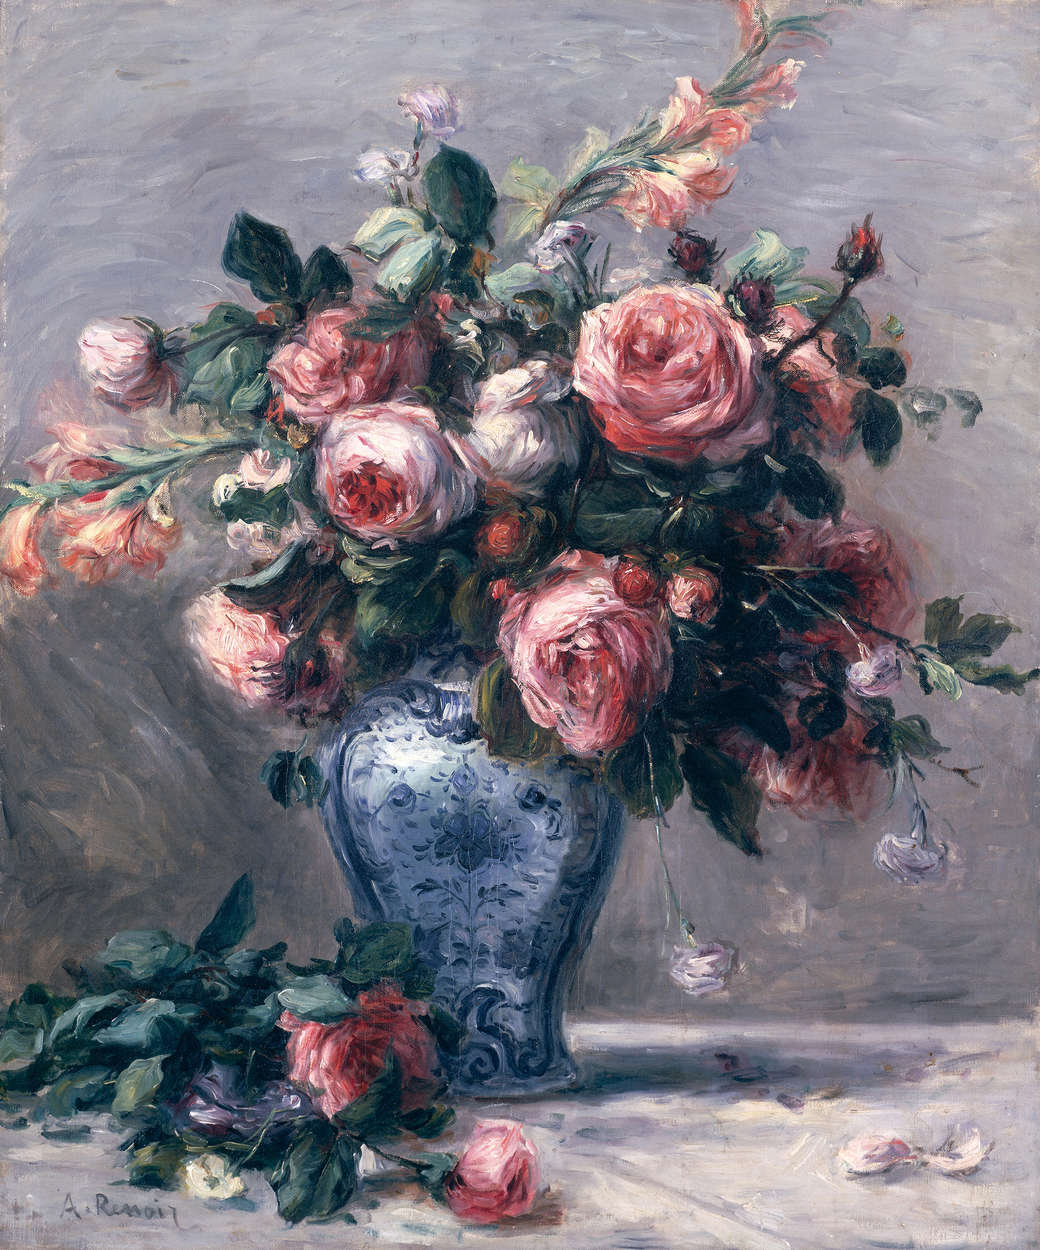             Mural "Rosa en un jarrón" de Pierre Auguste Renoir
        